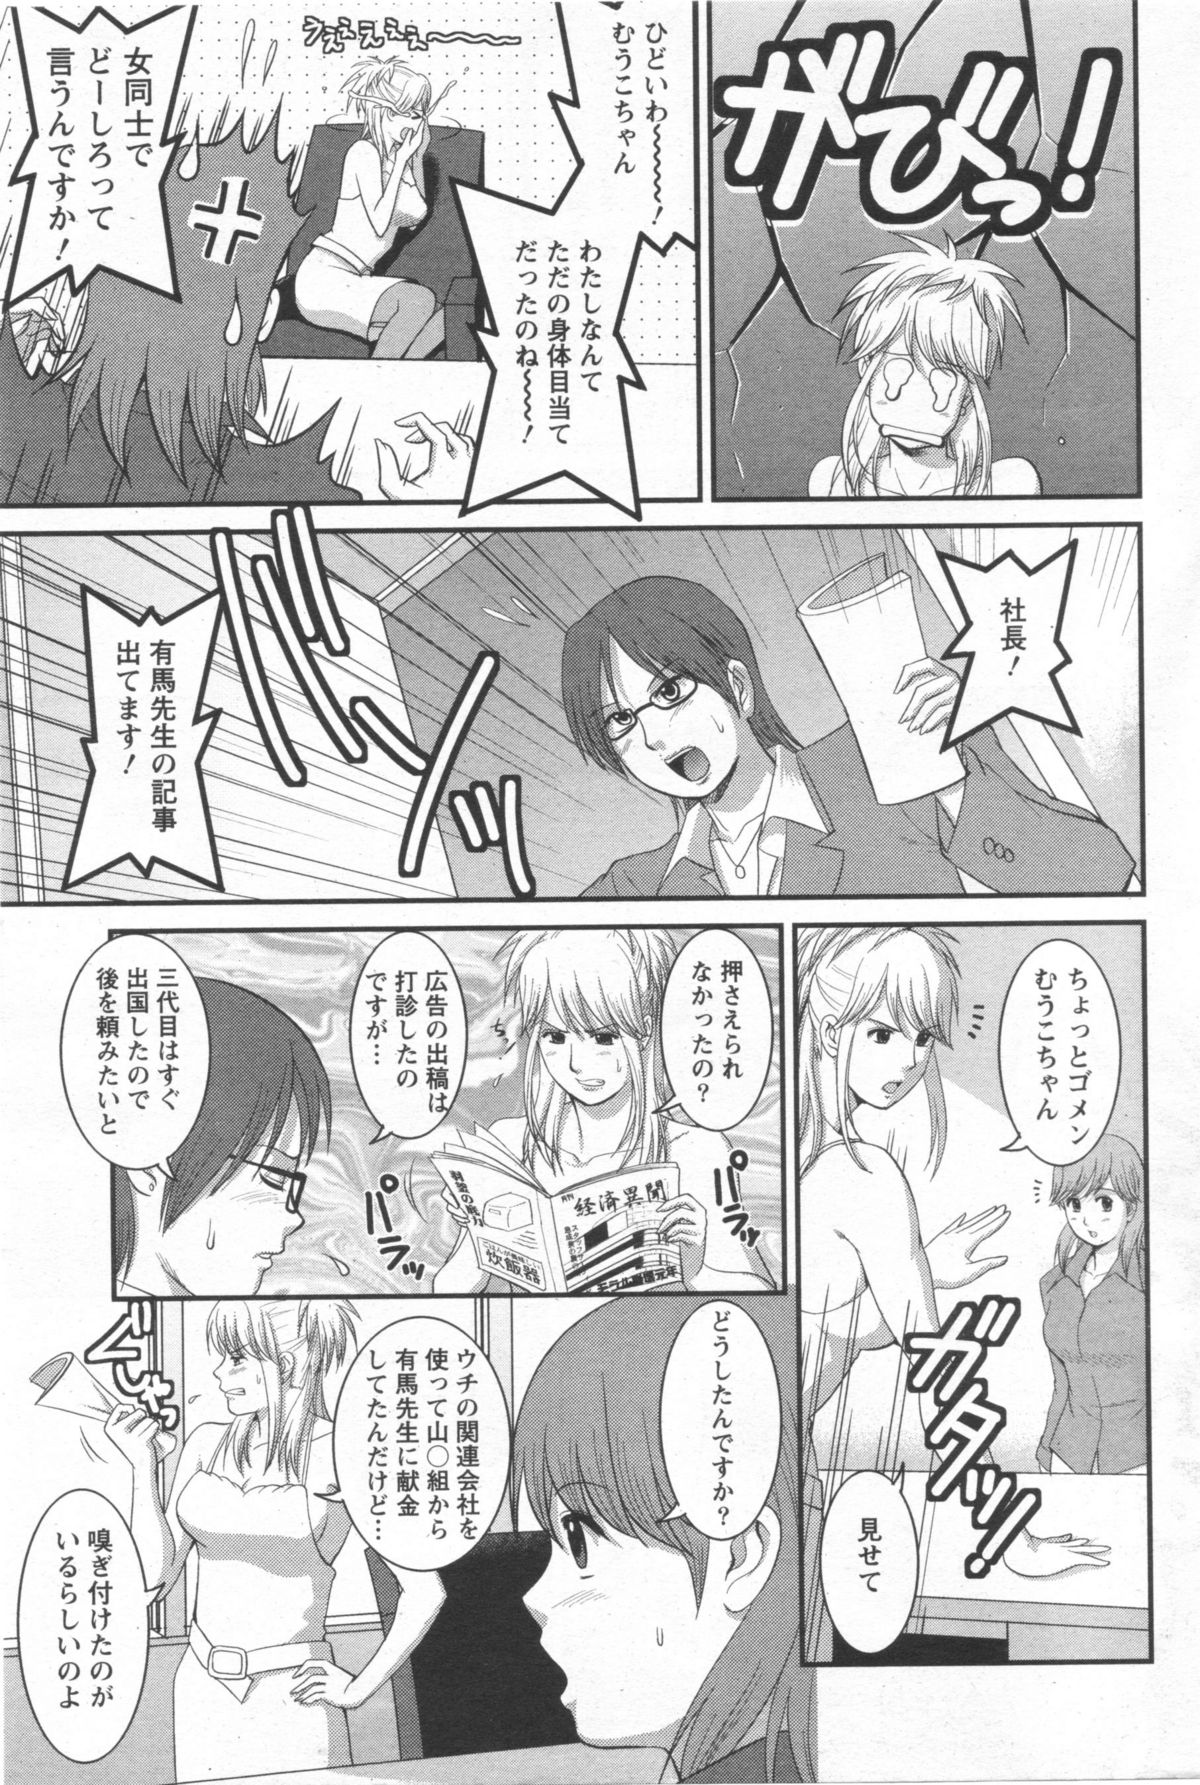 Haken no Muuko-san 10 [Saigado] page 8 full